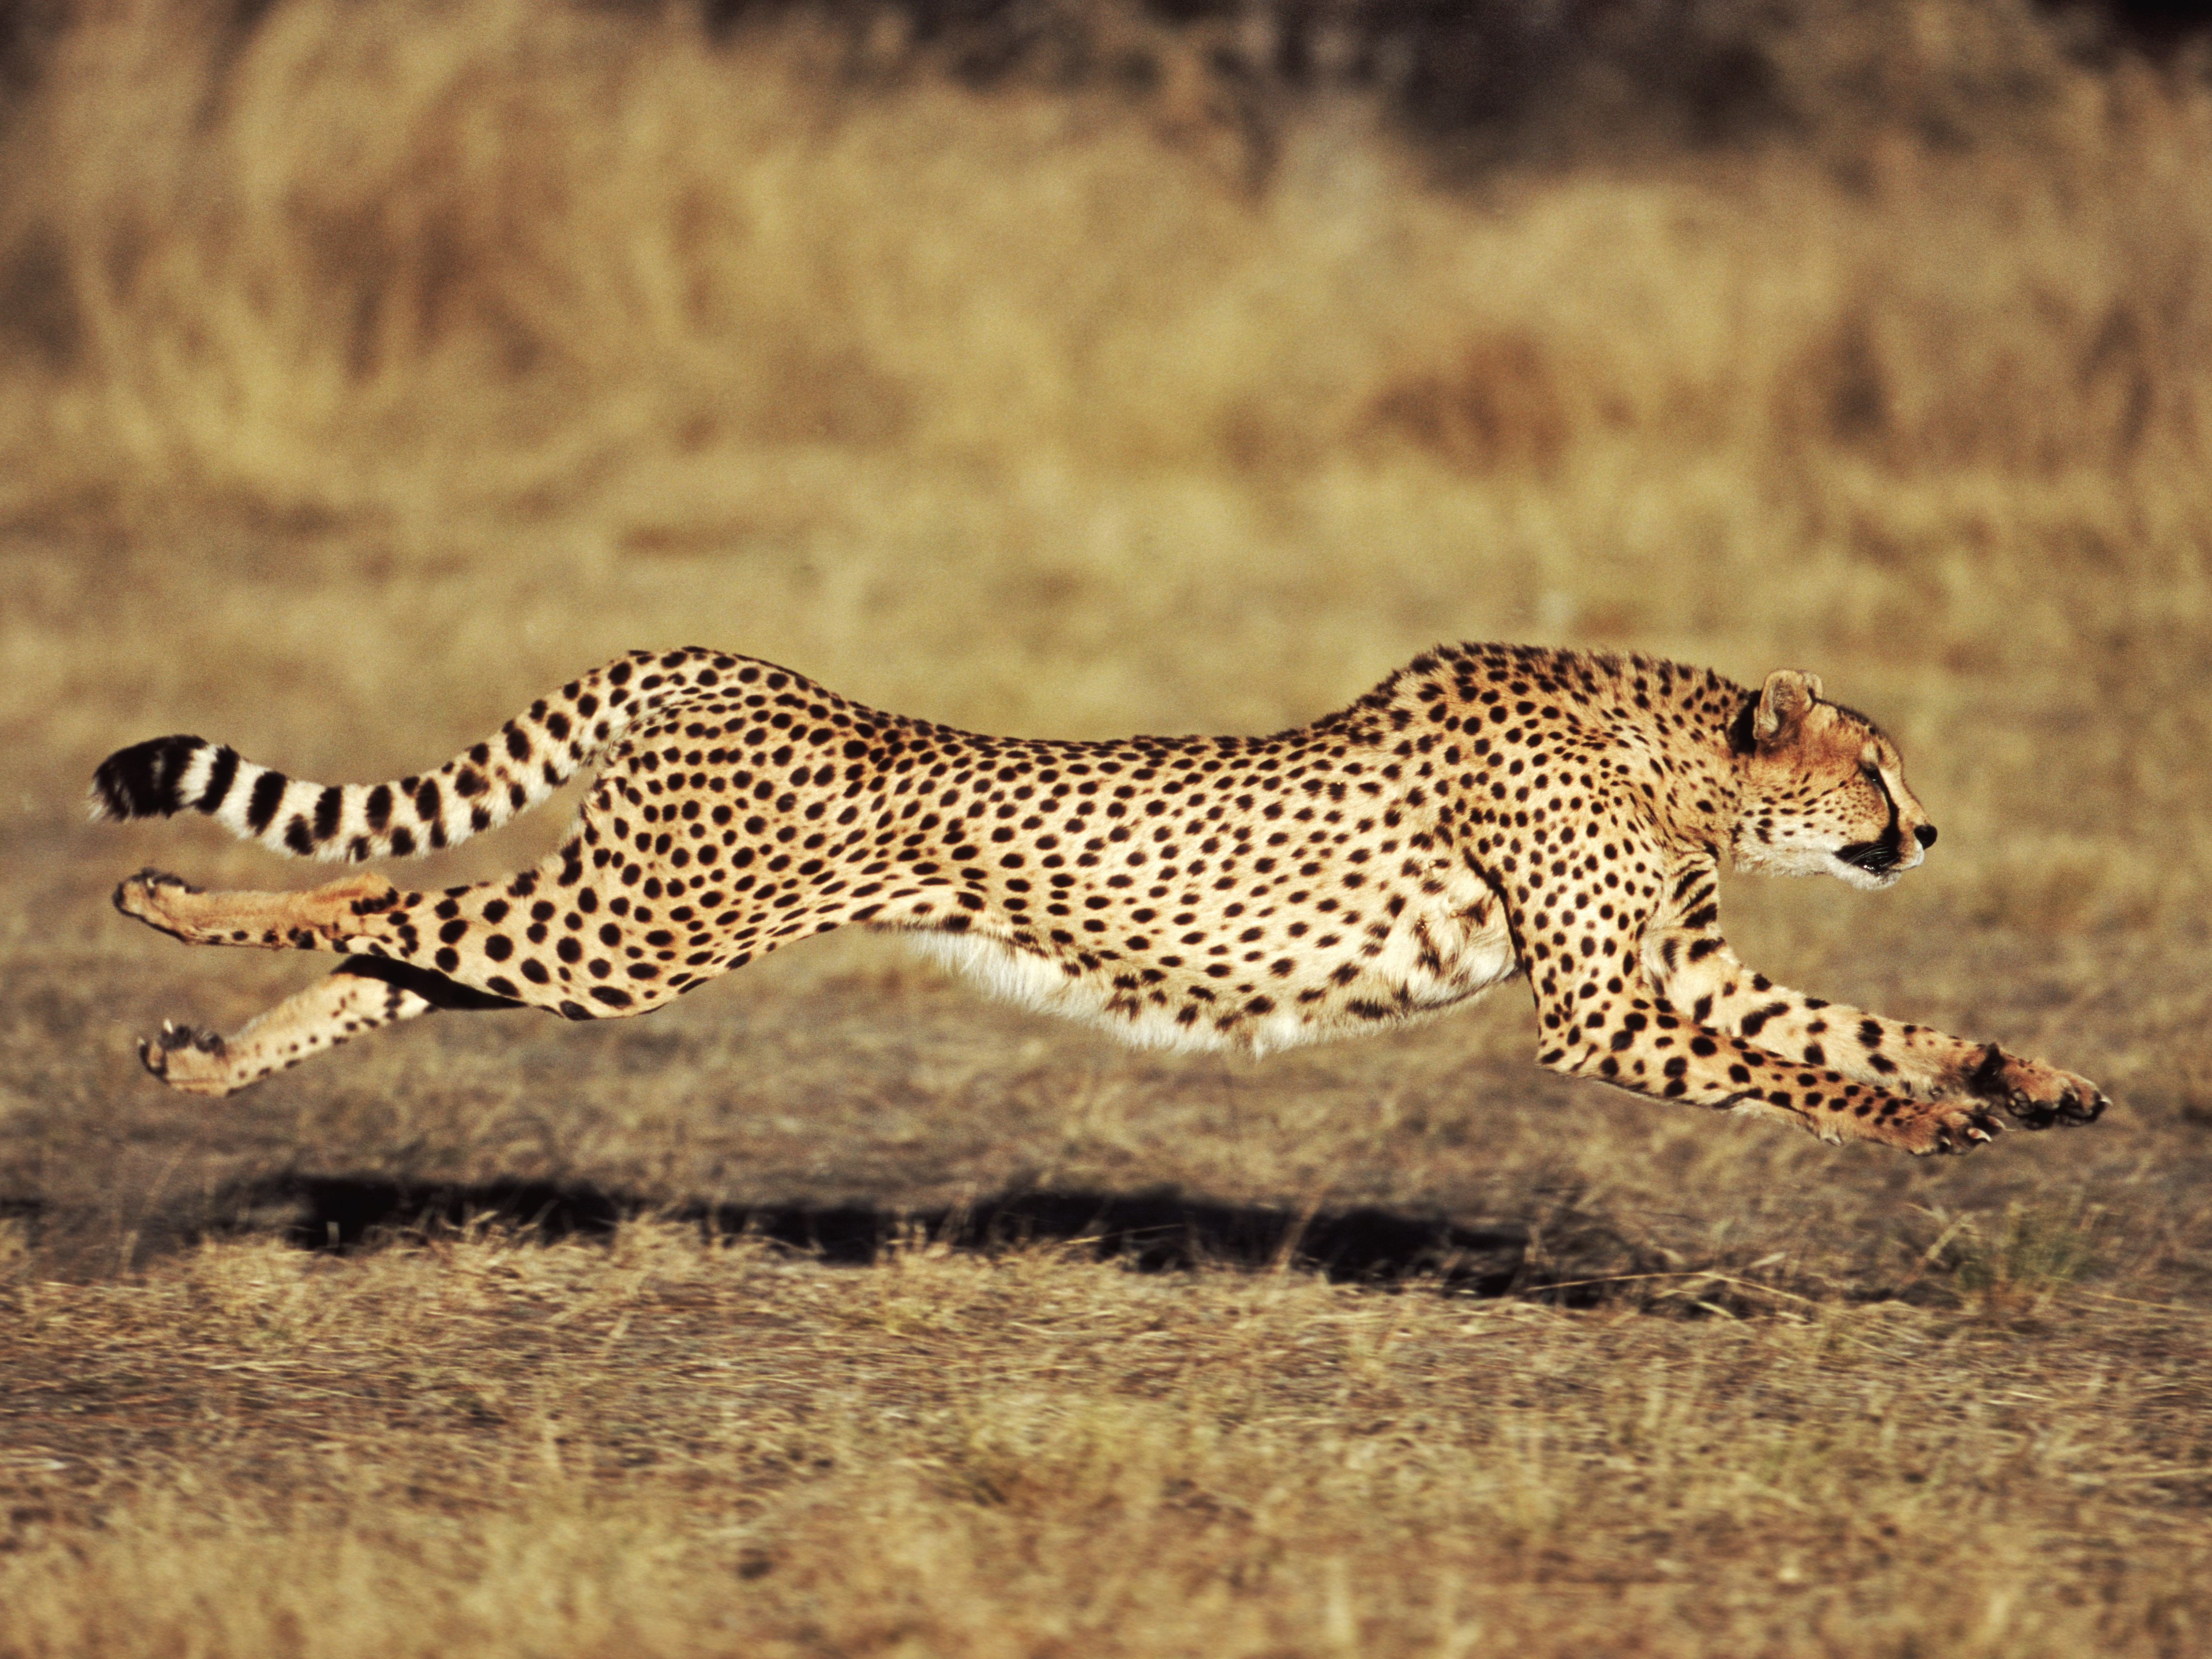 How fast can a Cheetah Run?